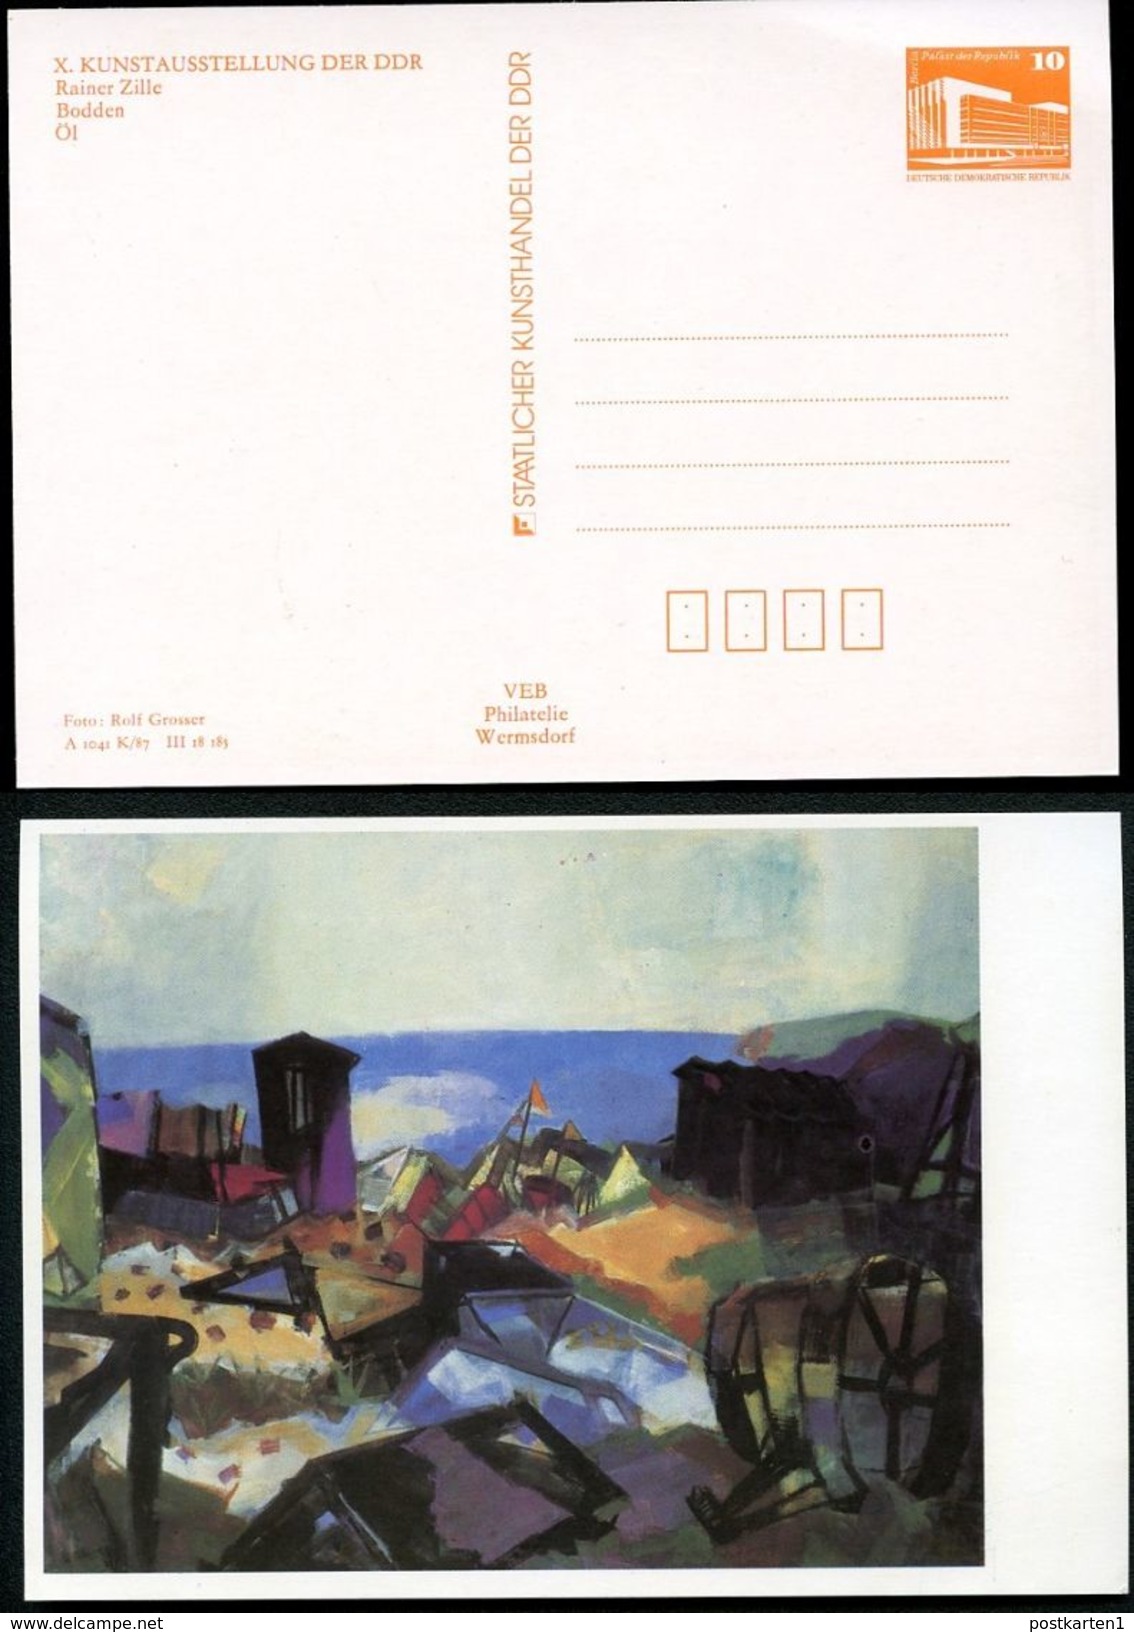 DDR Privat-Postkarte PP19 B1/005-1b KUNSTAUSSTELLUNG DRESDEN 1987 NGK 3,00 € - Privatpostkarten - Ungebraucht